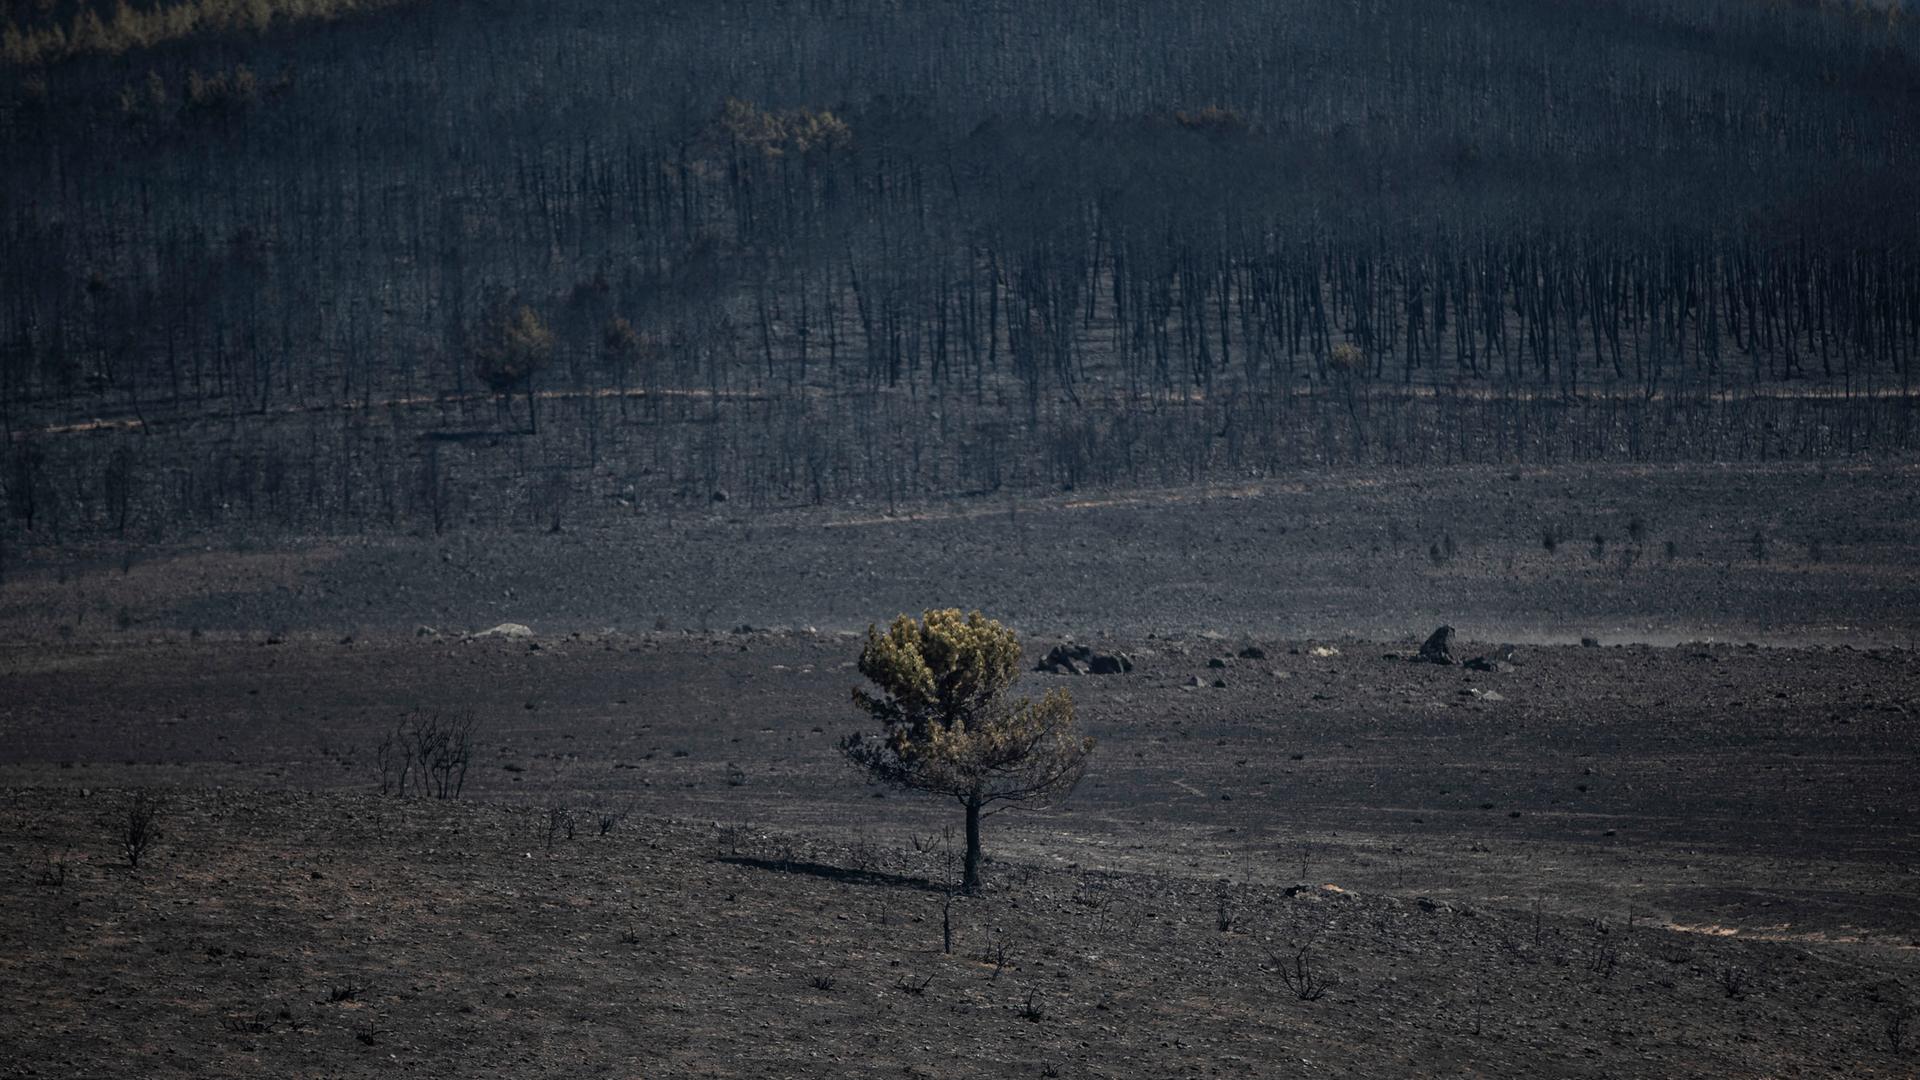 Verbrannte Waldfläche nach einem Waldbrand in Spanien 2022. Ein einziger verkohlter Baum ist stehengeblieben, alle anderen sind zu Asche verbrannt.